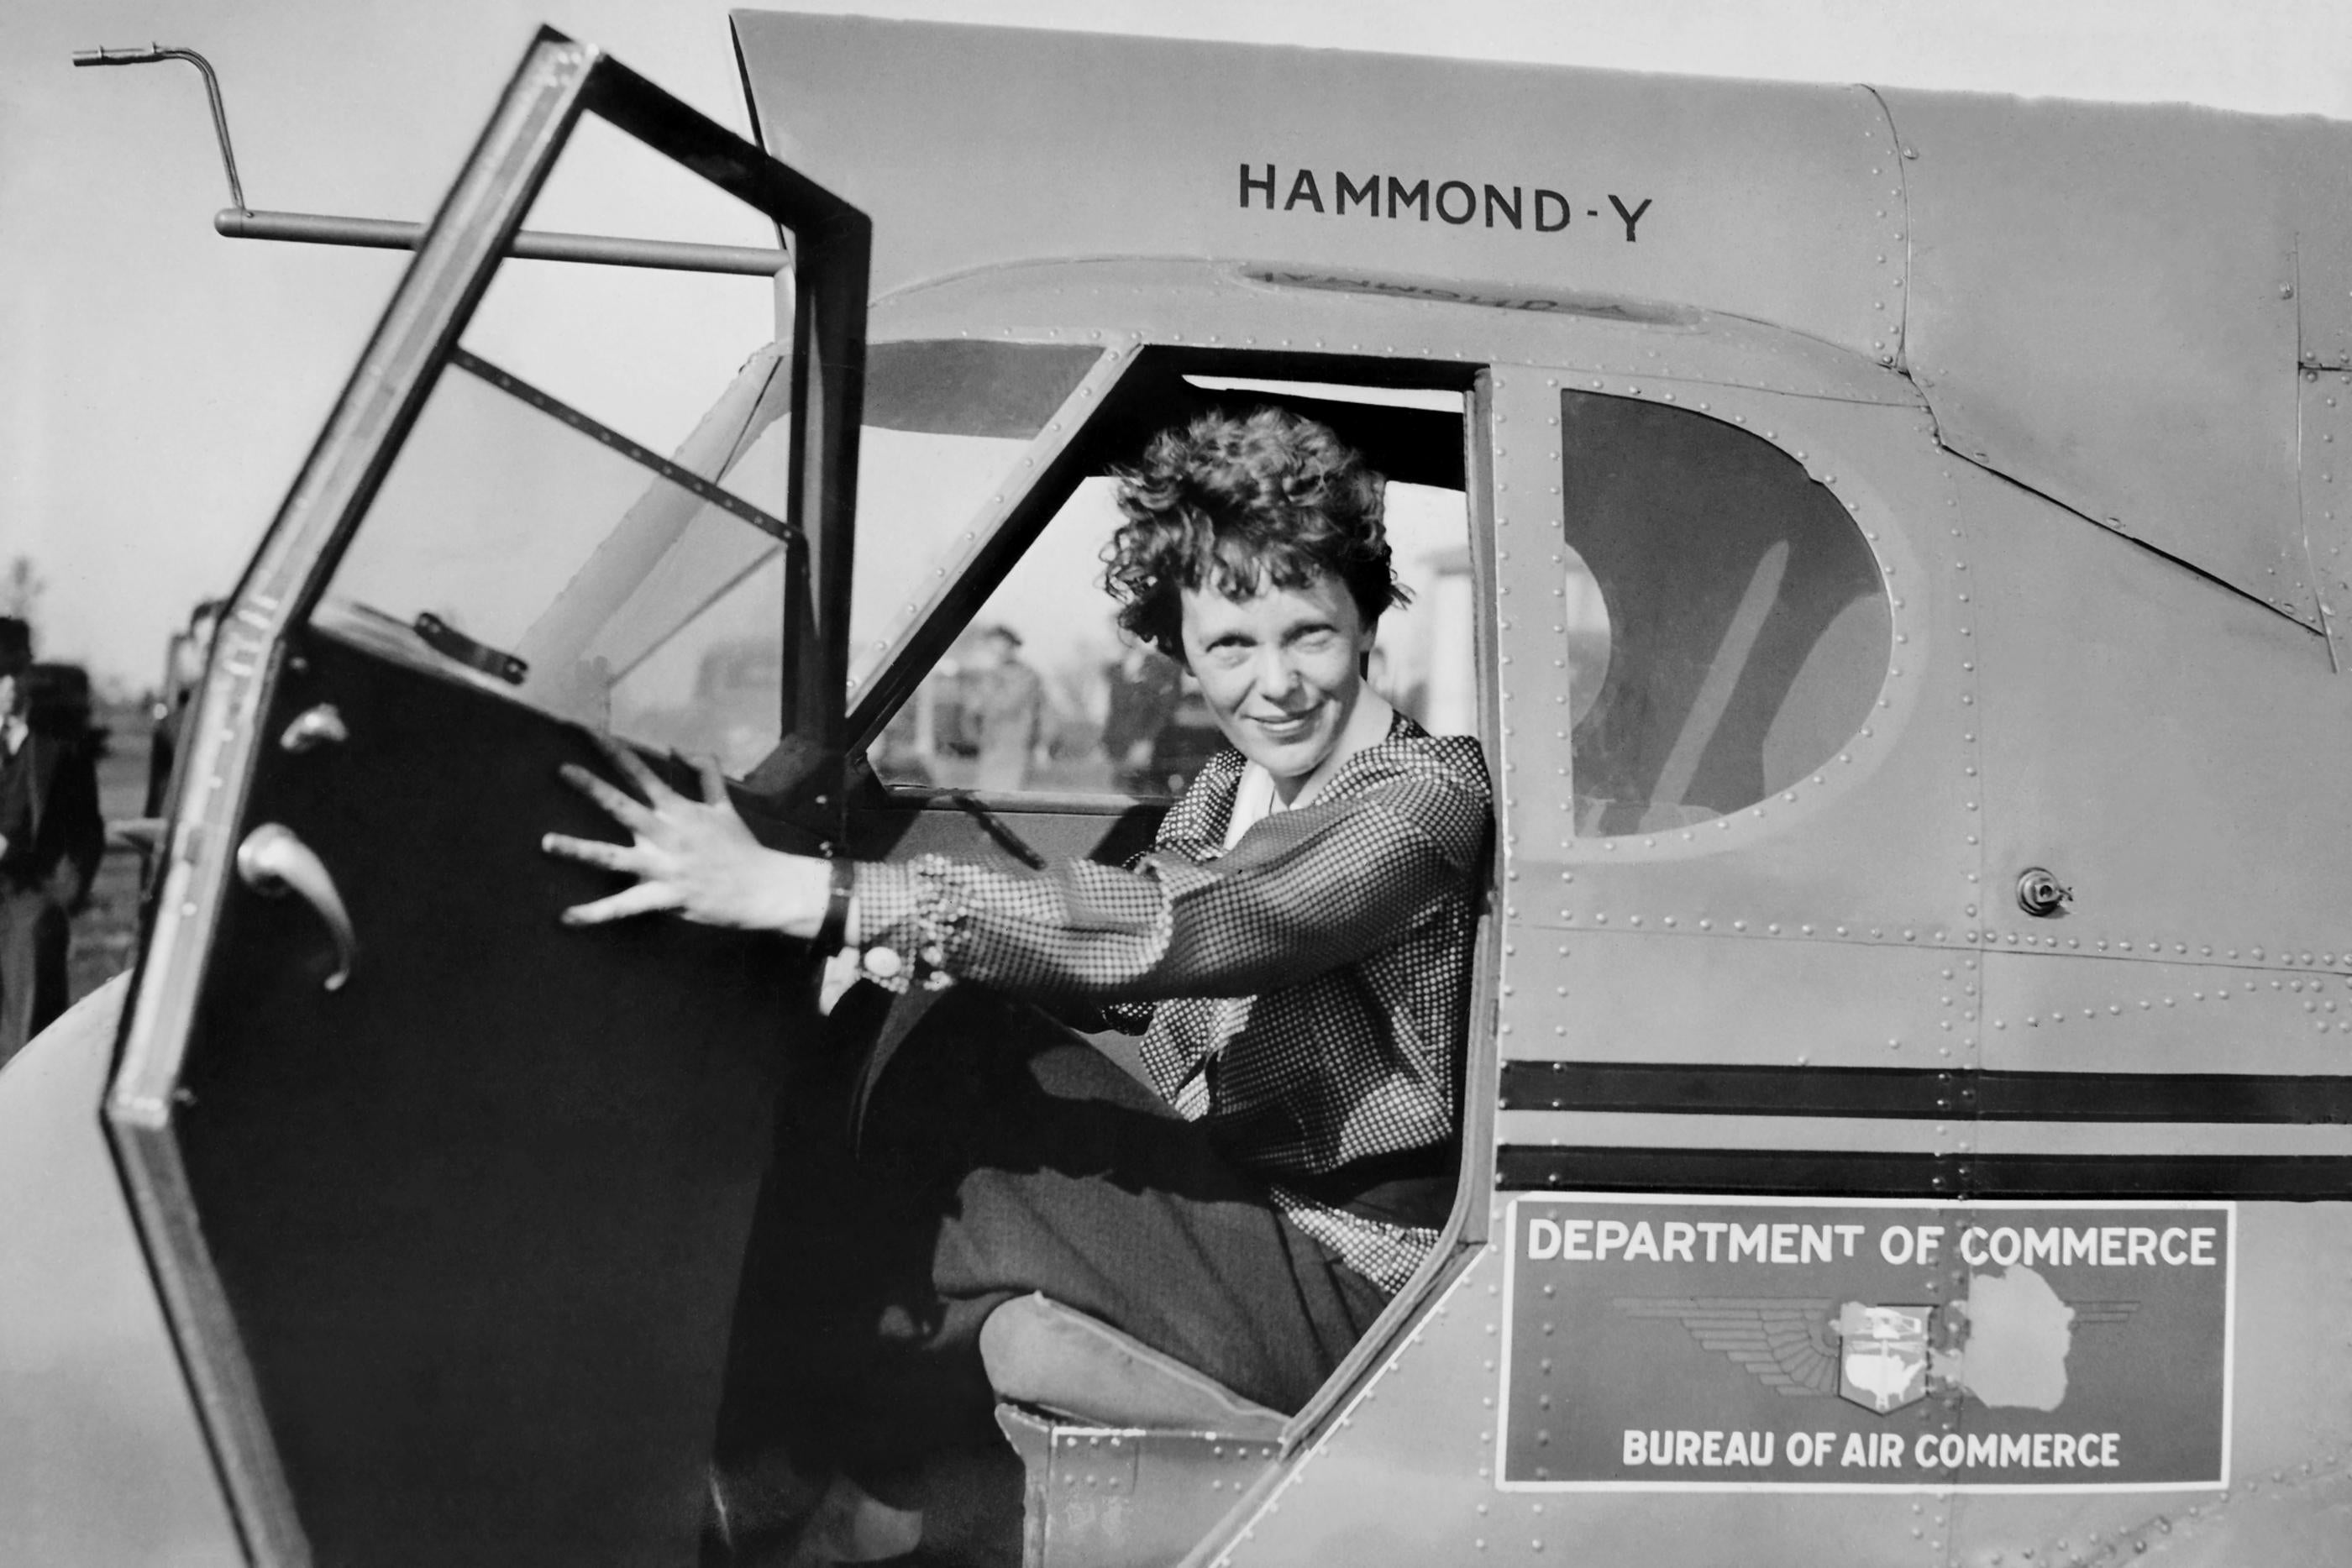 Unknown Portrait Photograph - Amelia Earhart Flight over Washington D.C.